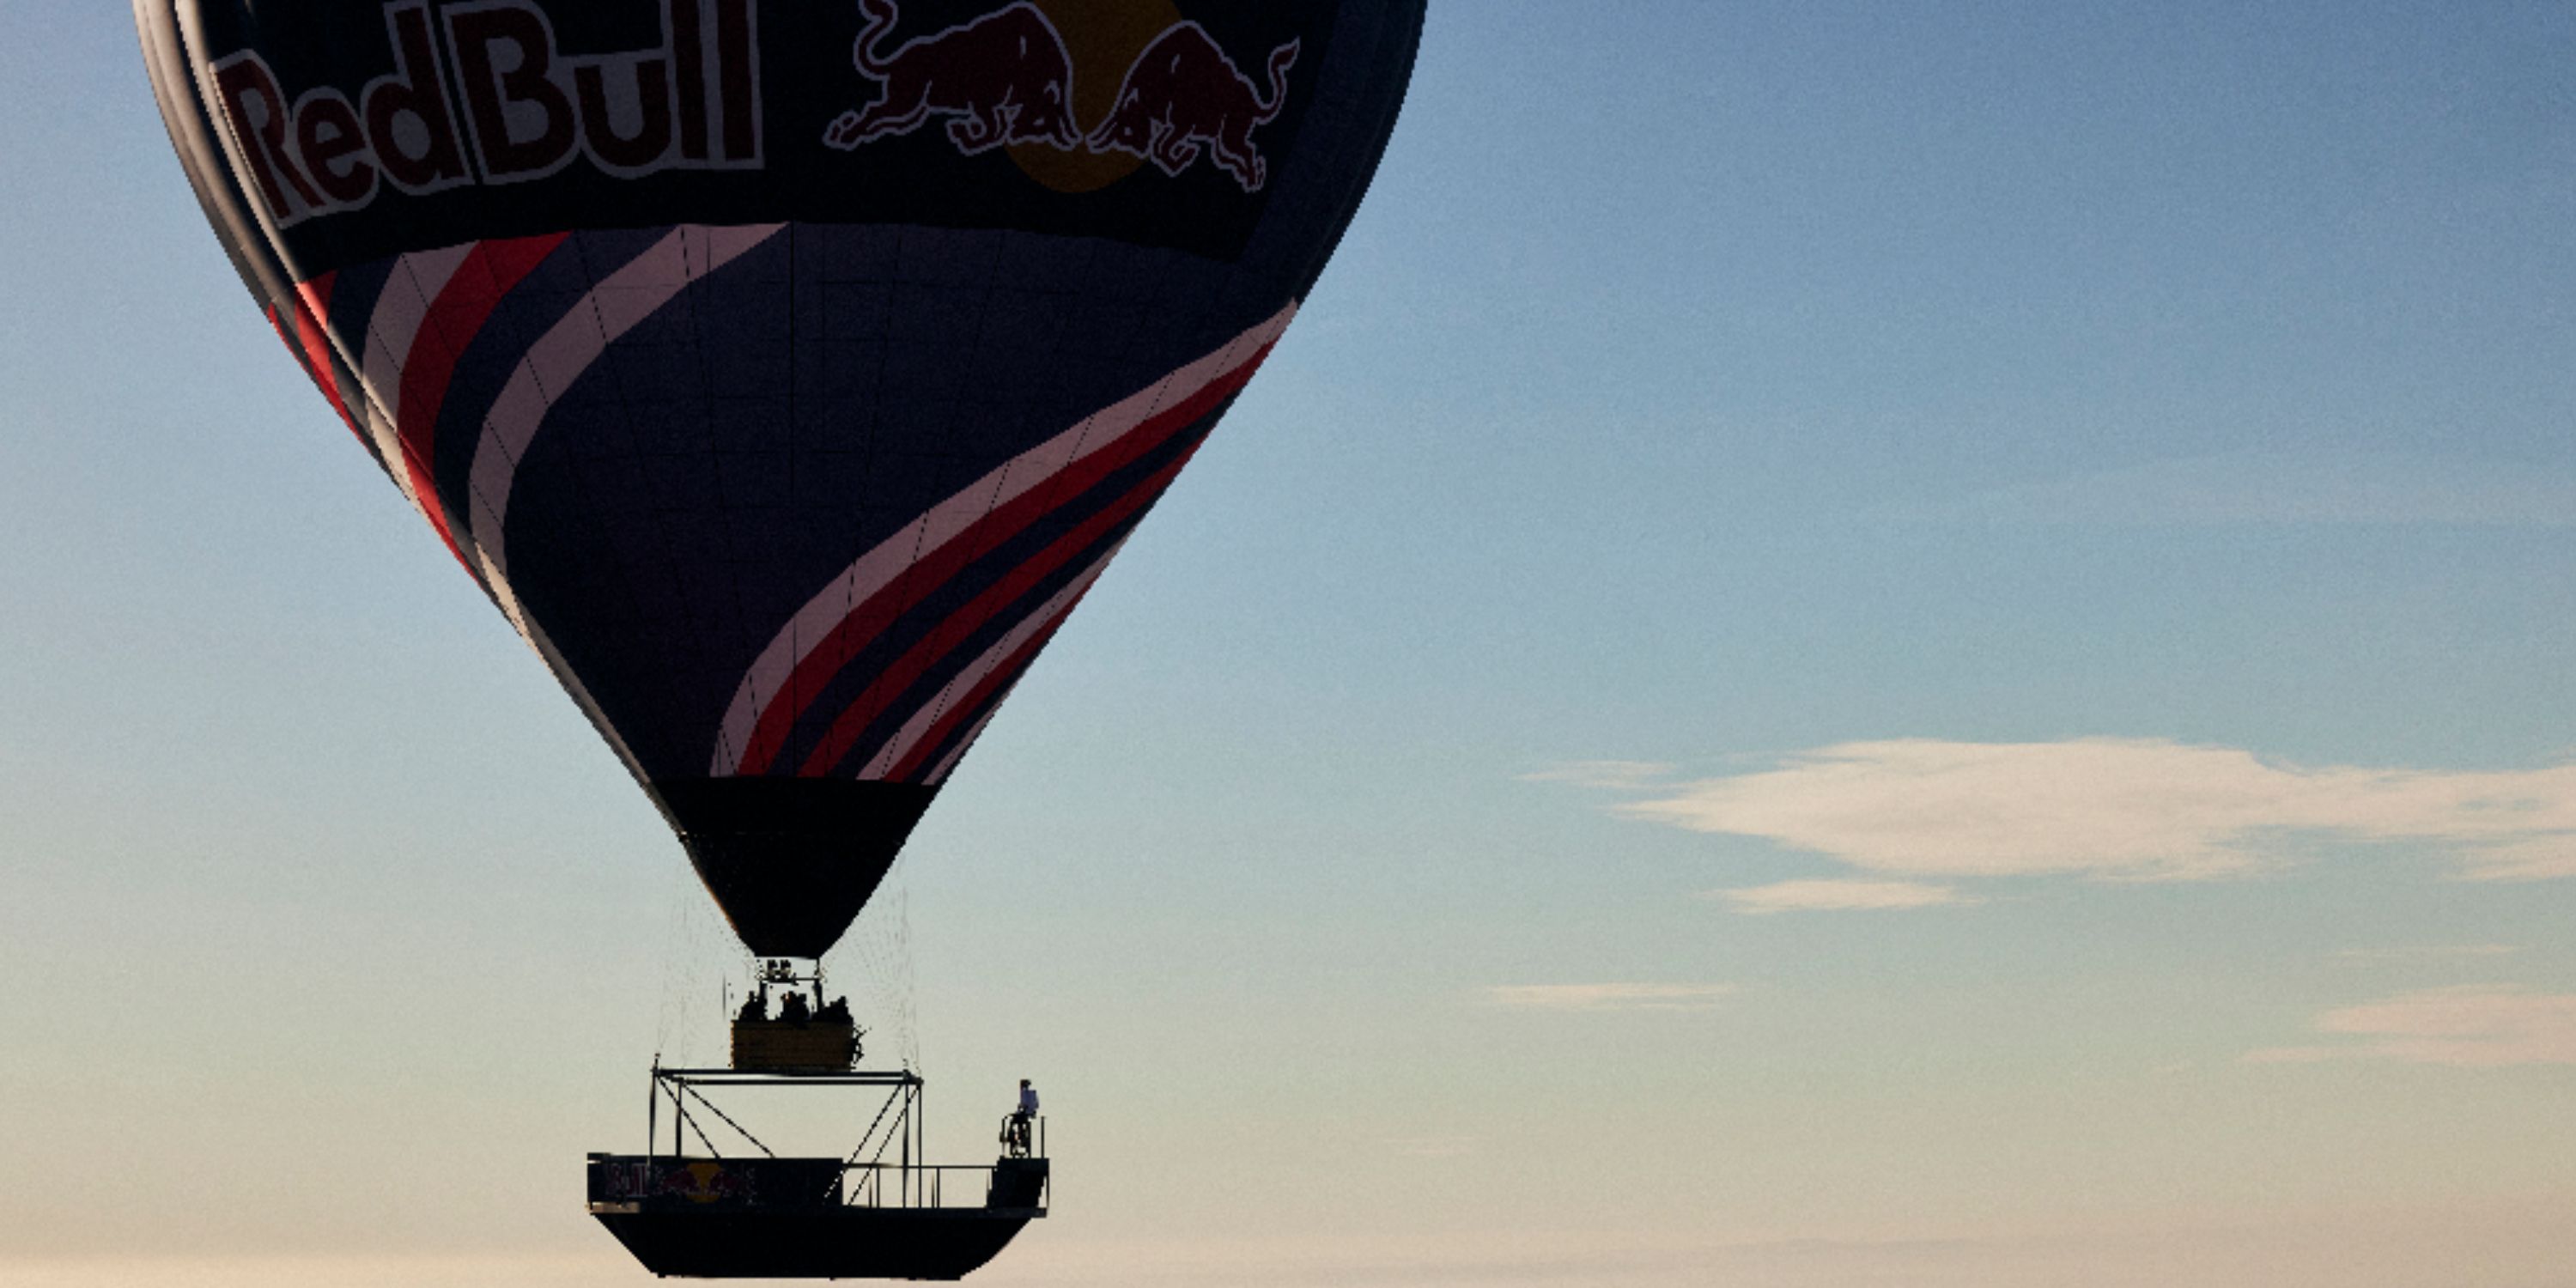 Red Bull's skatepark hot air balloon